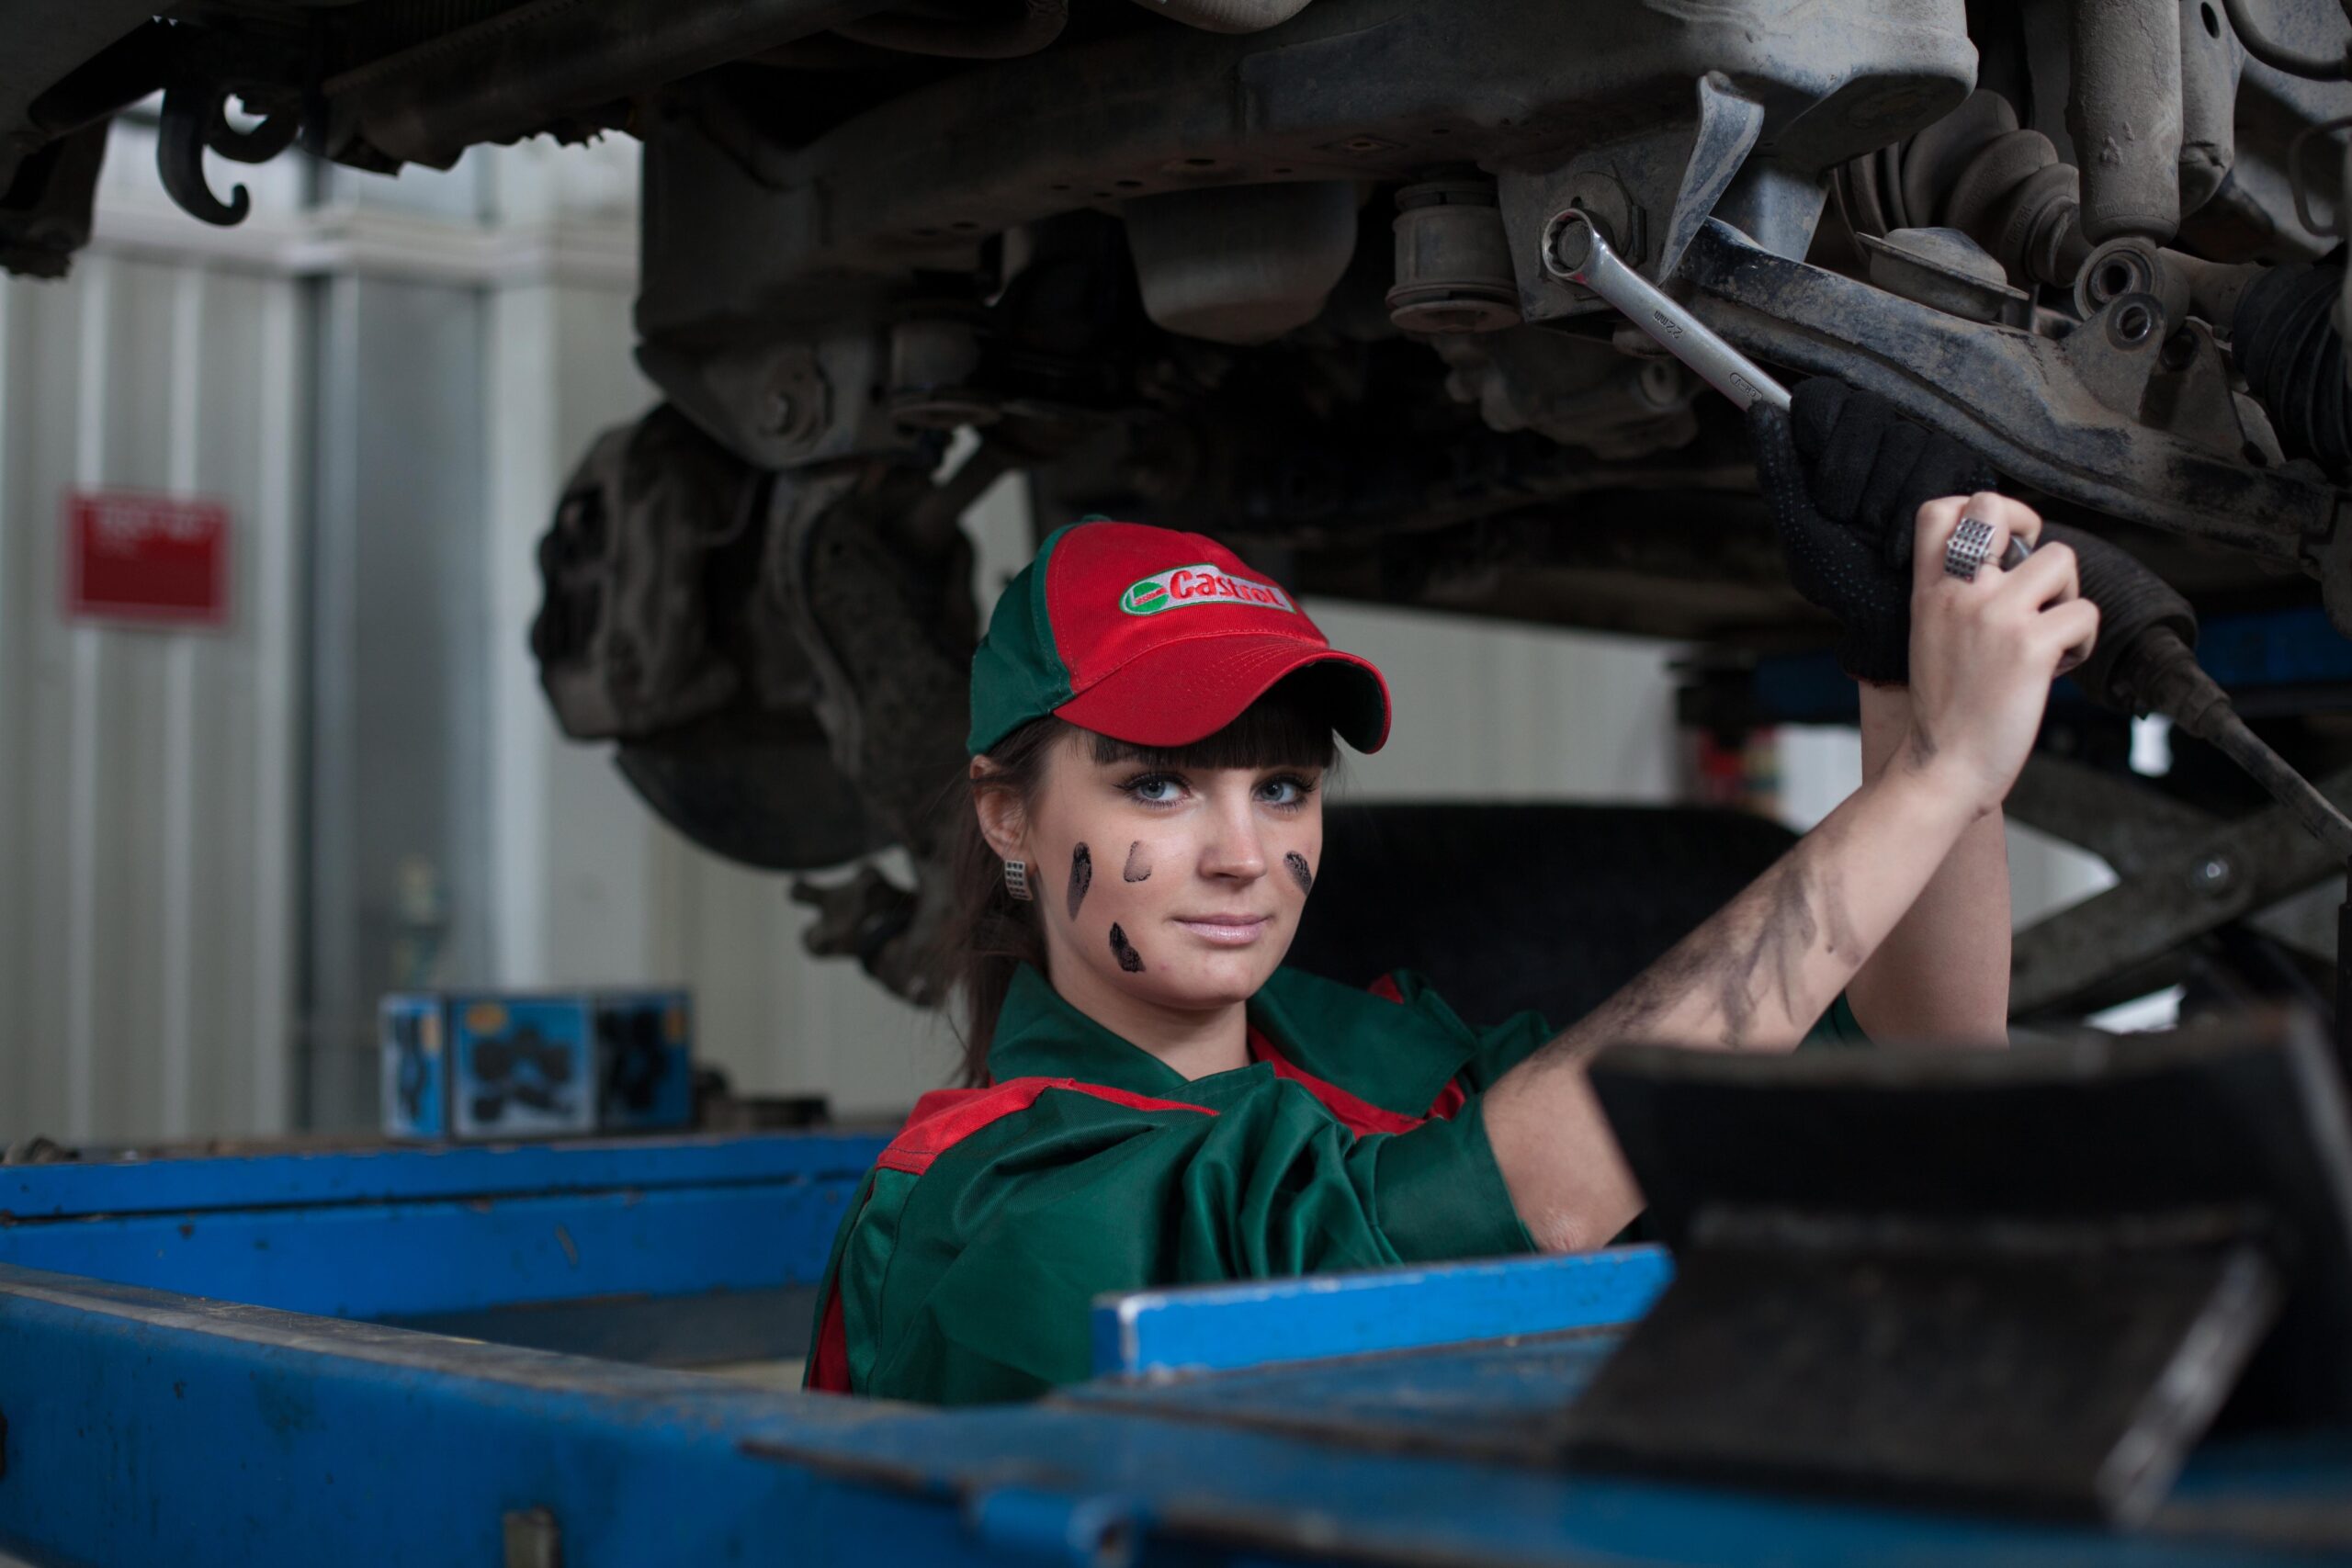 自動車整備士のおすすめ転職方法をしりたい20代女性